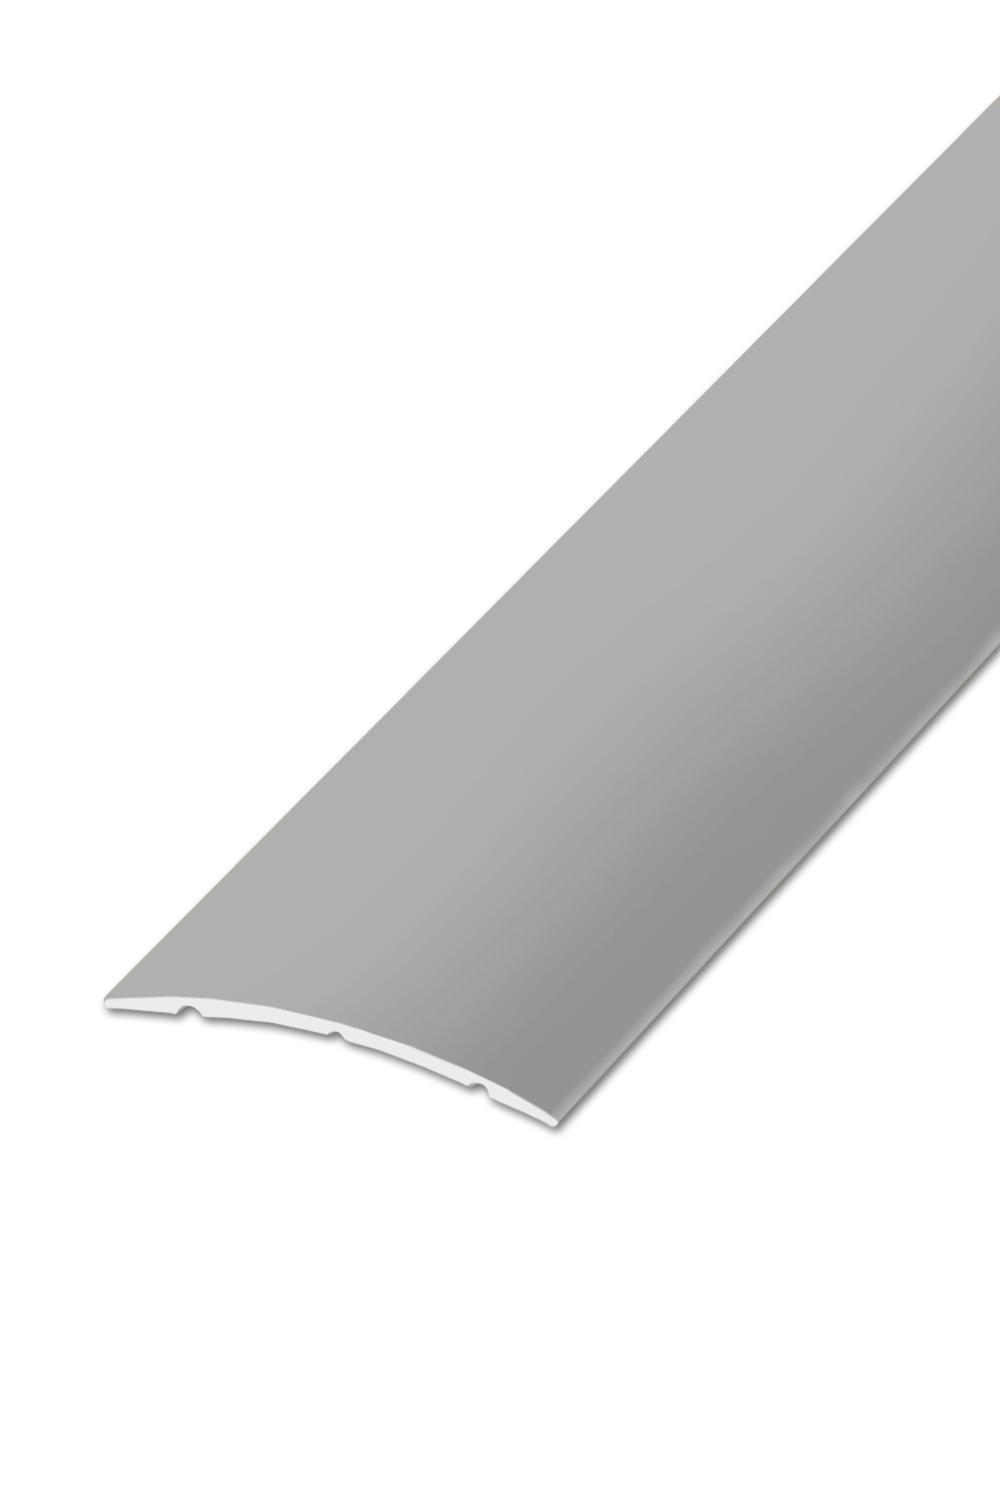 Přechodová lišta STANDARD 32 - Stříbrná 270 cm